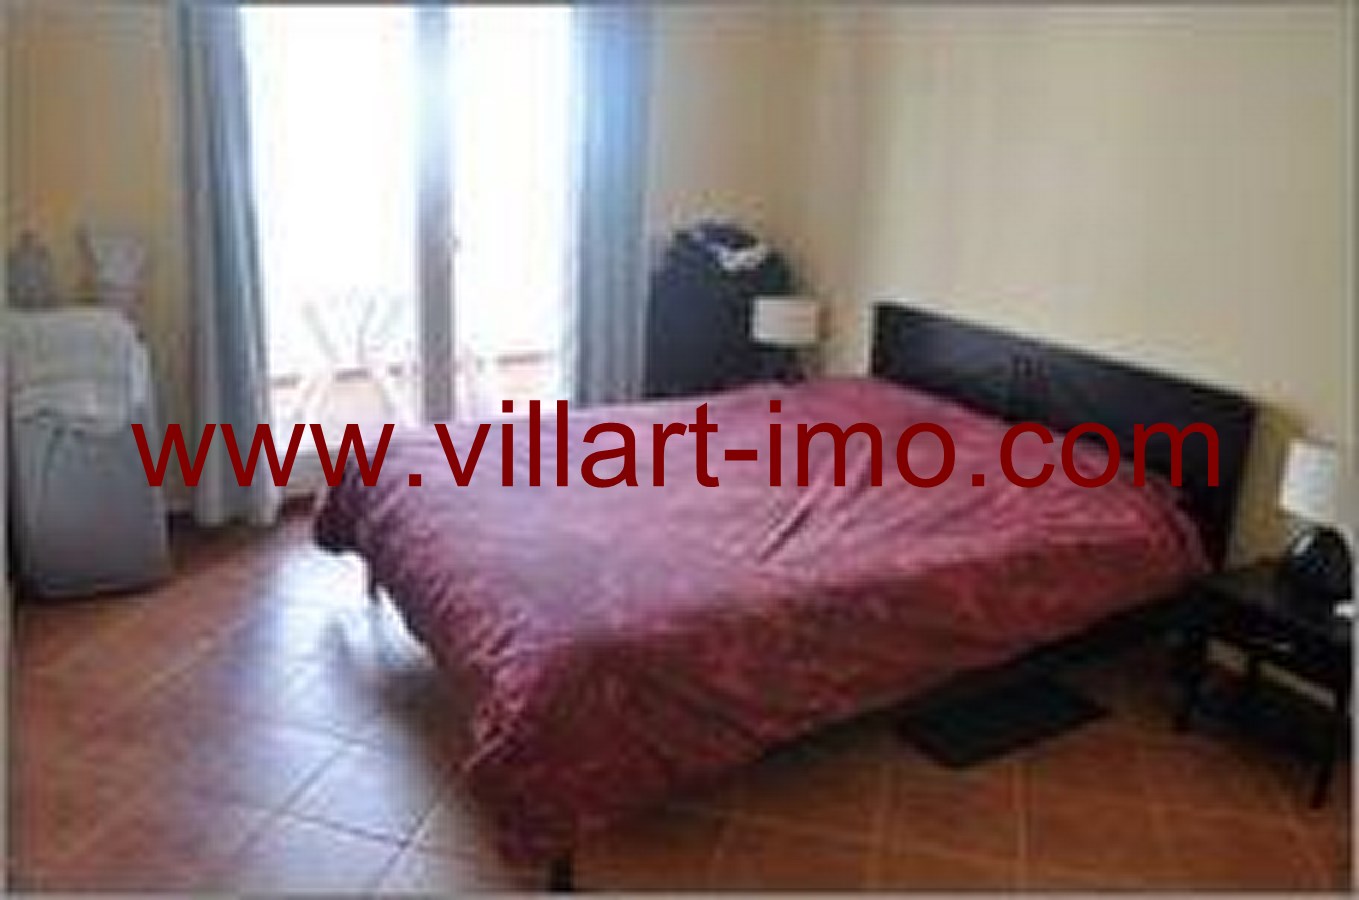 2- Vente -Appartement-Tanger-Maroc–Malabata-Chambre 1-VA50-Villartimmo